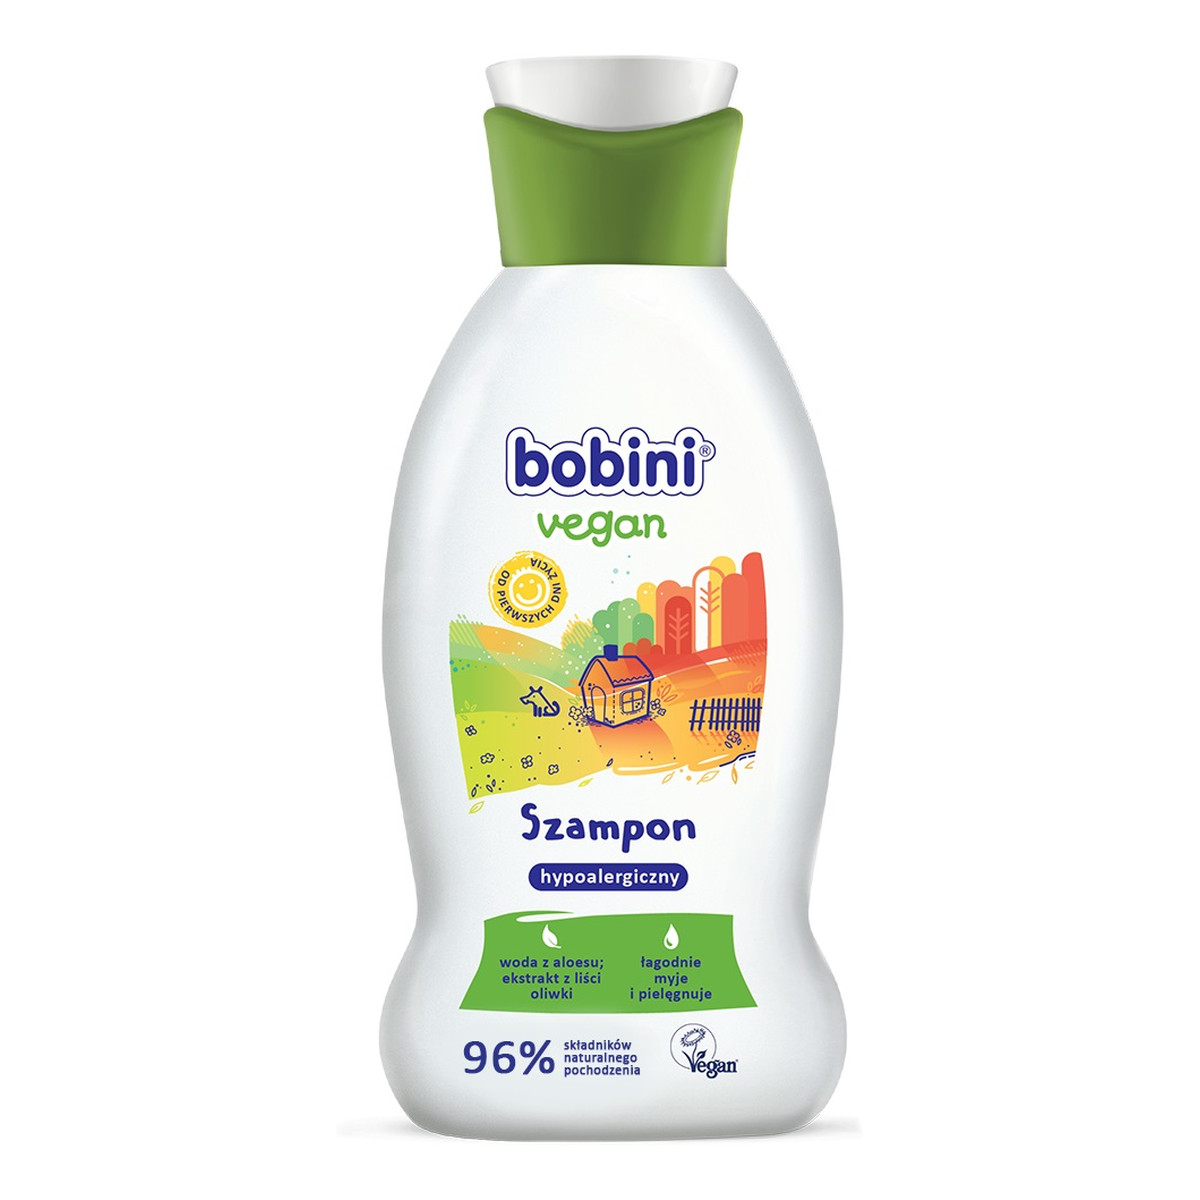 Bobini Vegan Hypoalergiczny szampon do włosów 200ml